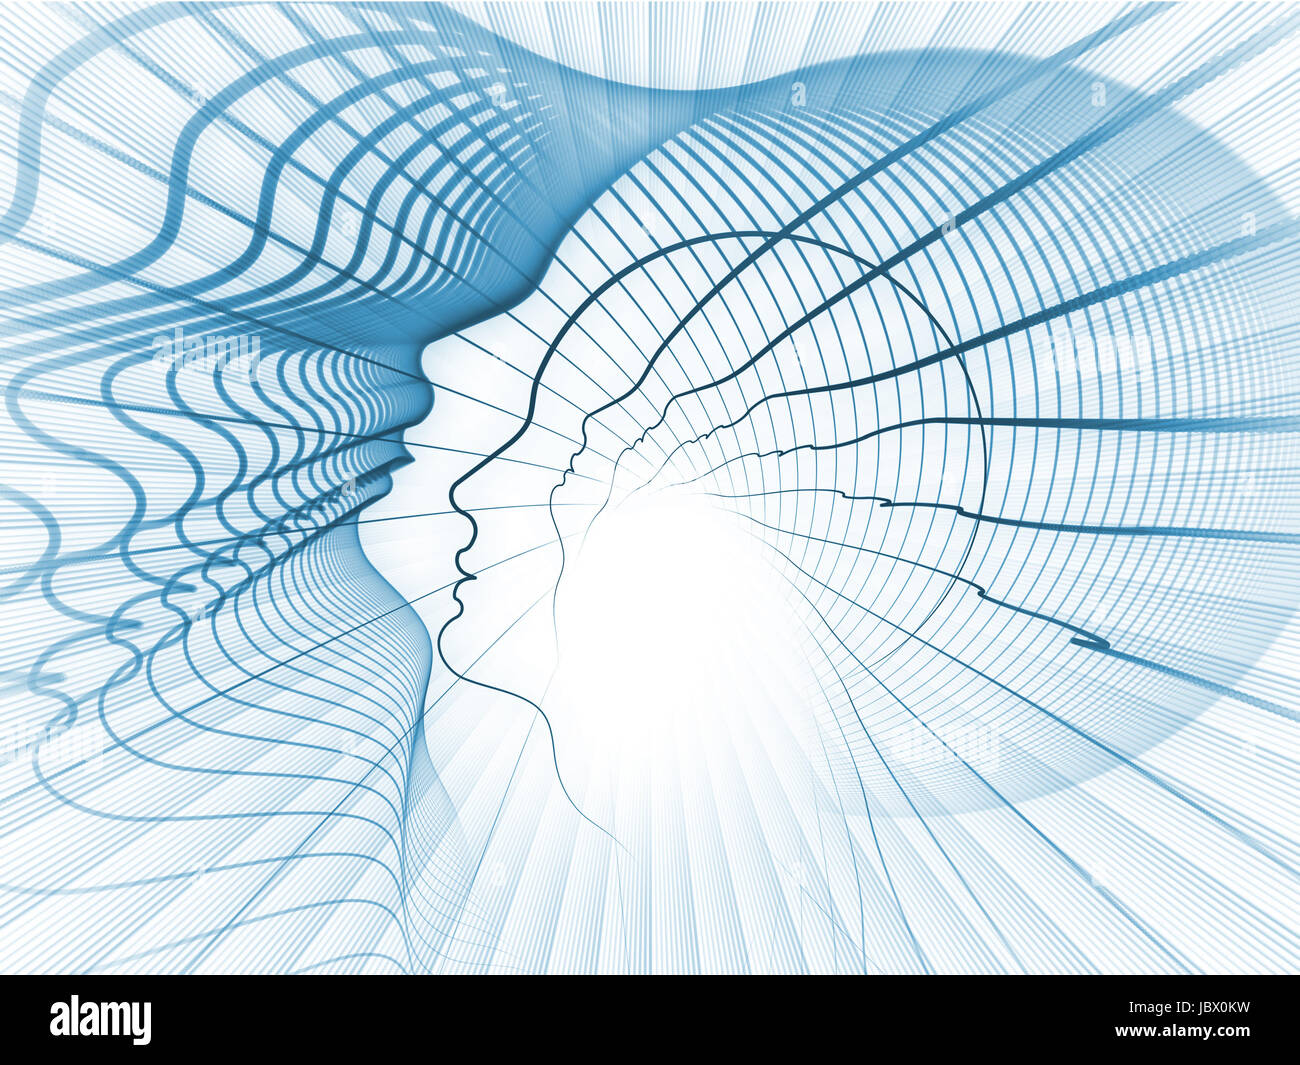 Geometrie der Seele-Serie. Design bestehend aus Profillinien des menschlichen Kopfes als Metapher zum Thema Bildung, Wissenschaft, Technik und Grafik-design Stockfoto